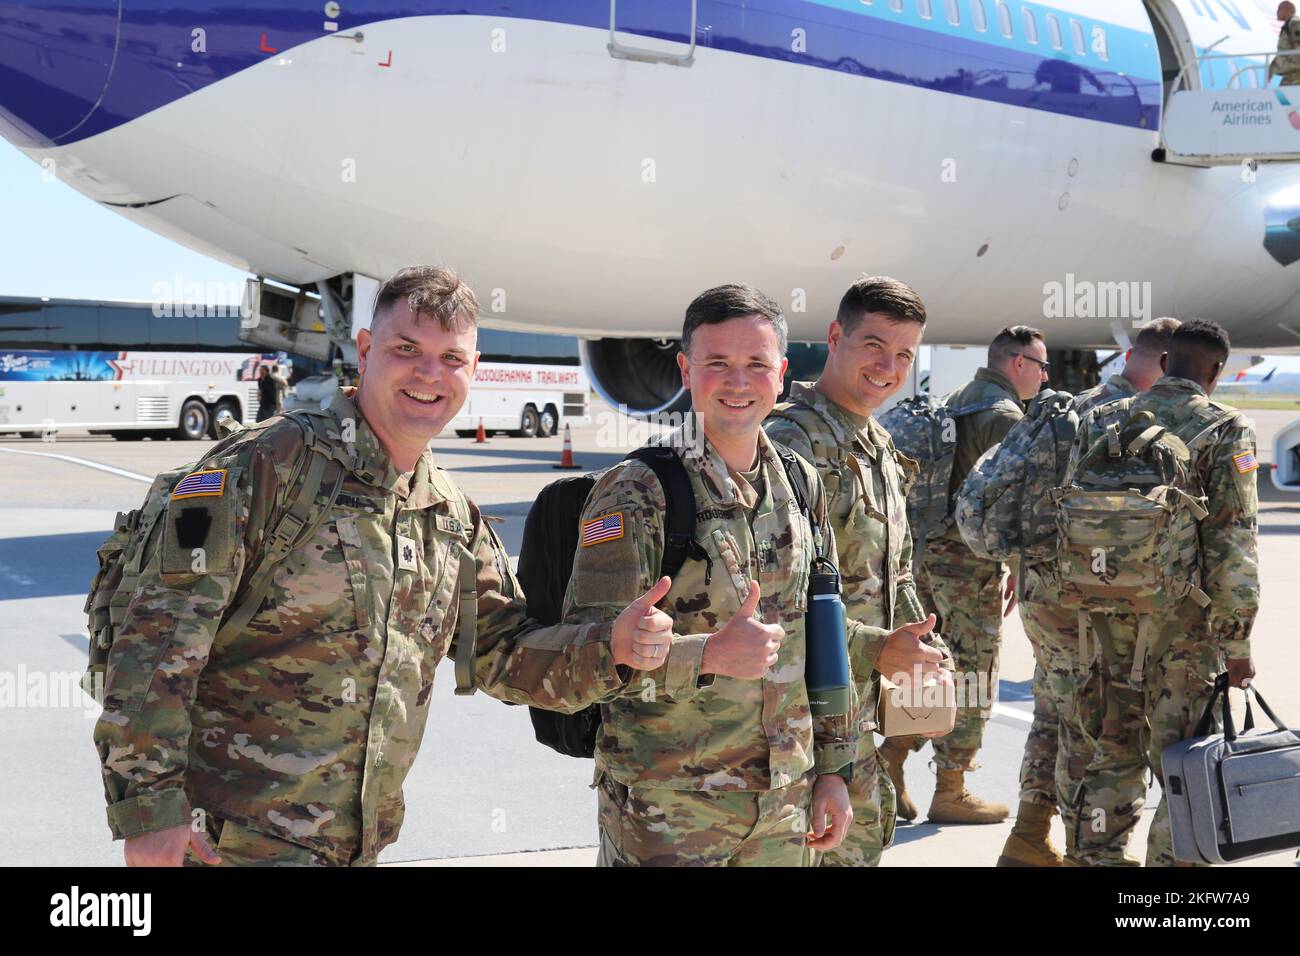 Les soldats américains dont le quartier général et le bataillon du quartier général, 28th Infantry Division, partent de l'aéroport international de Harrisburg alors qu'ils commenceront un déploiement d'un an, où ils serviront au Moyen-Orient à l'appui de l'opération Spartan Shield. Banque D'Images